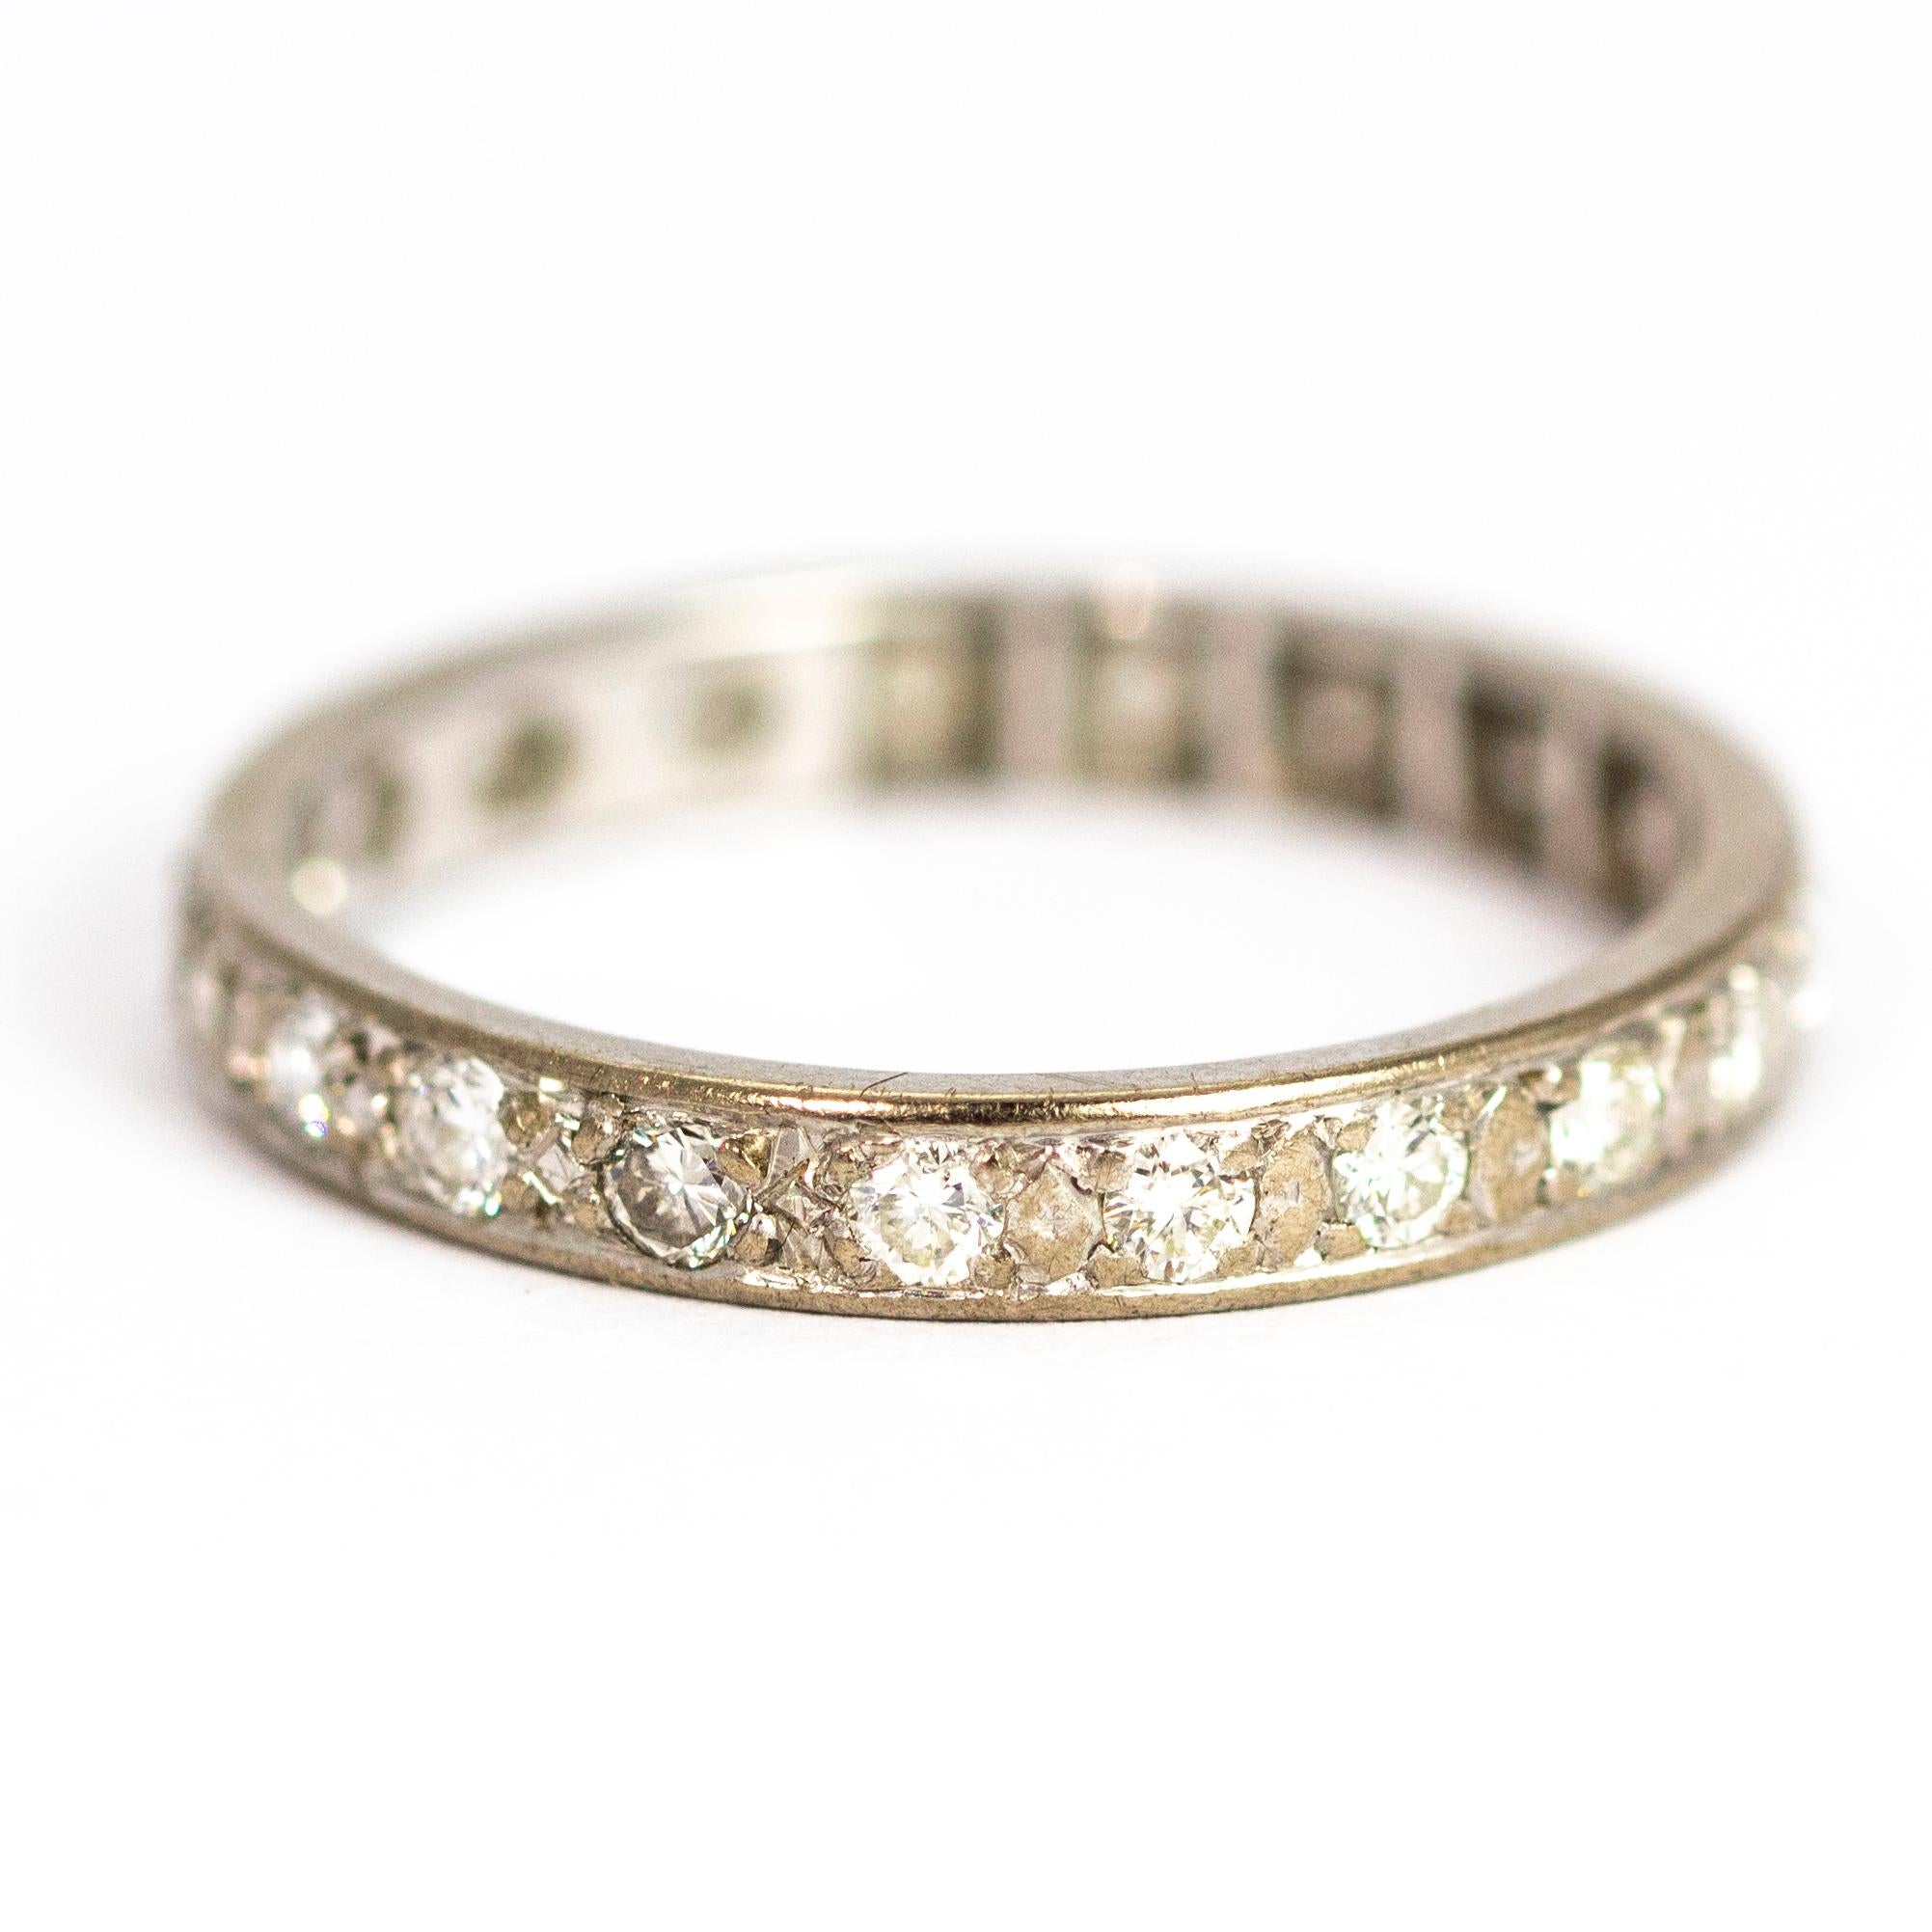 Ce merveilleux anneau d'éternité tout en diamants contient un total d'environ 1,5 carat de diamants. Modifié en platine.

Taille de l'anneau : T ou 9 1/2
Largeur de la bande : 3,2 mm
